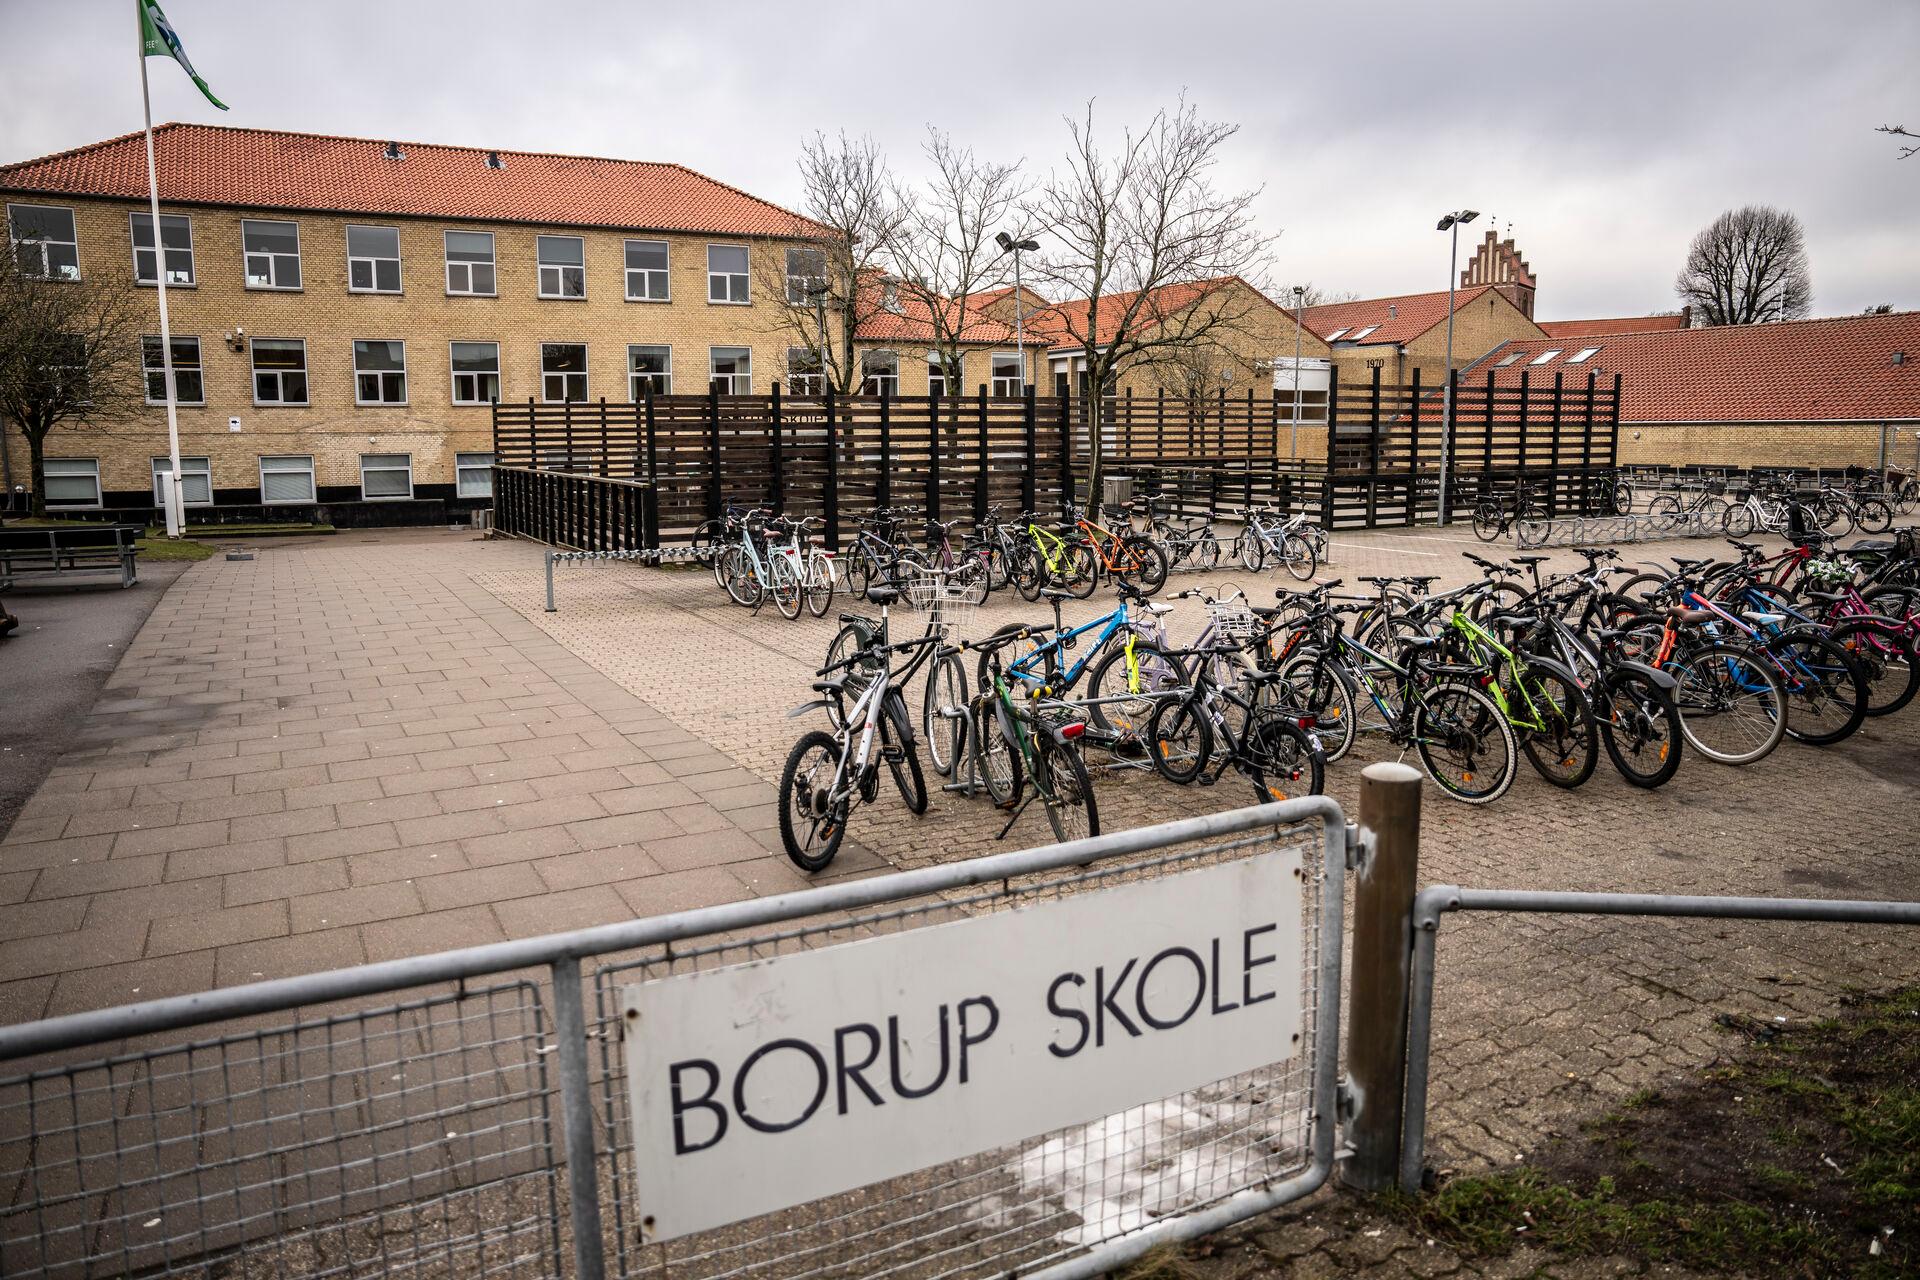 Det er blandt andet beretninger om vold og grænseoverskridende adfærd blandt elever her på Borup Skole i Køge, der har ført til en undersøgelse af skoleelevers adfærd. Også en skole i Odense, Agedrup Skole, har været i søgelyset. 